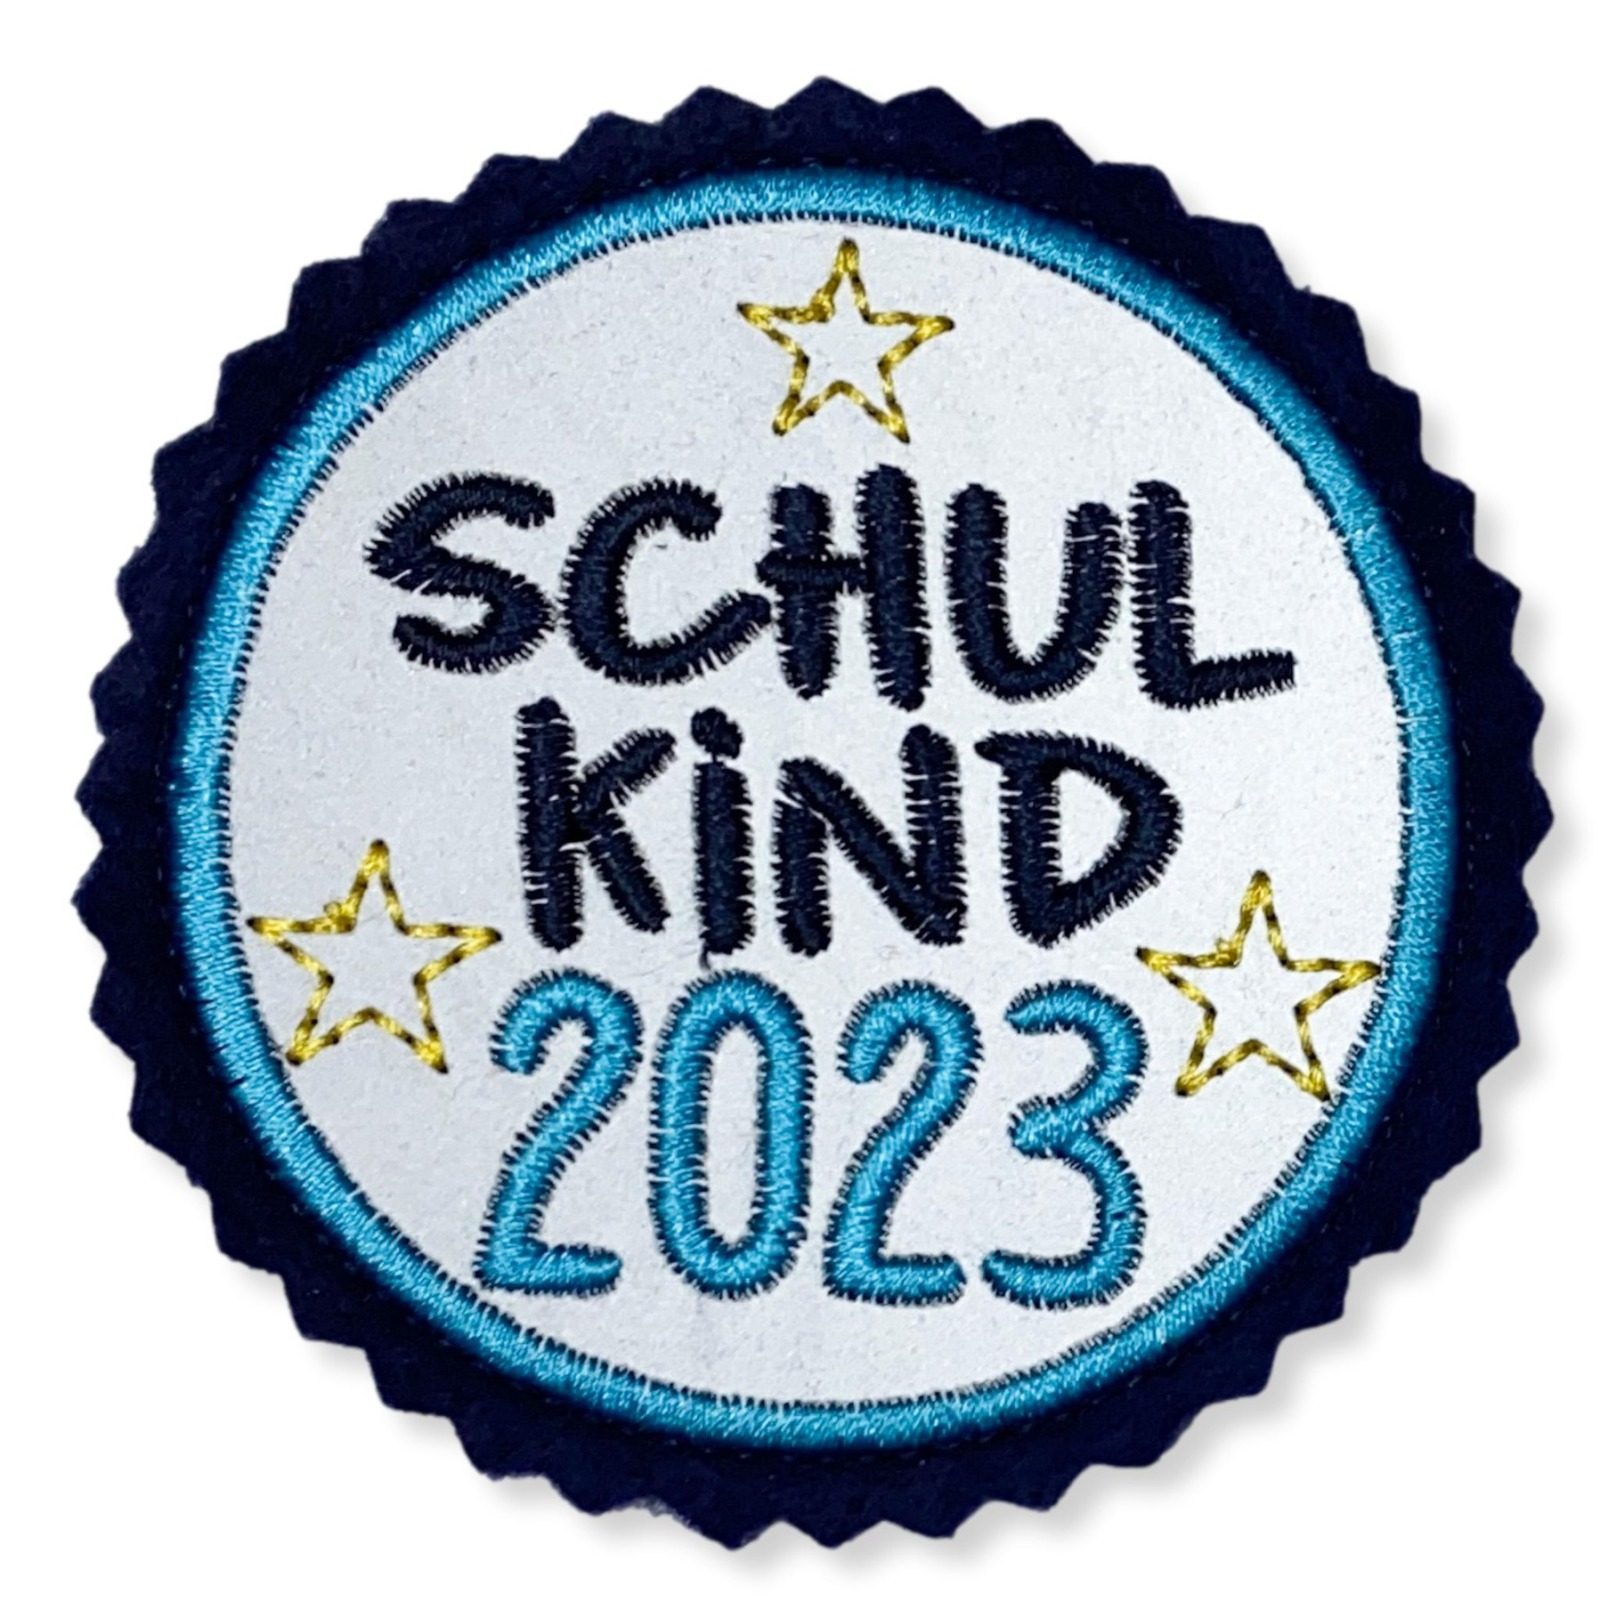 Klettie Schulkind 2023 8cm Durchmesser Reflektor türkis blau Einschulung Schulmappe 5